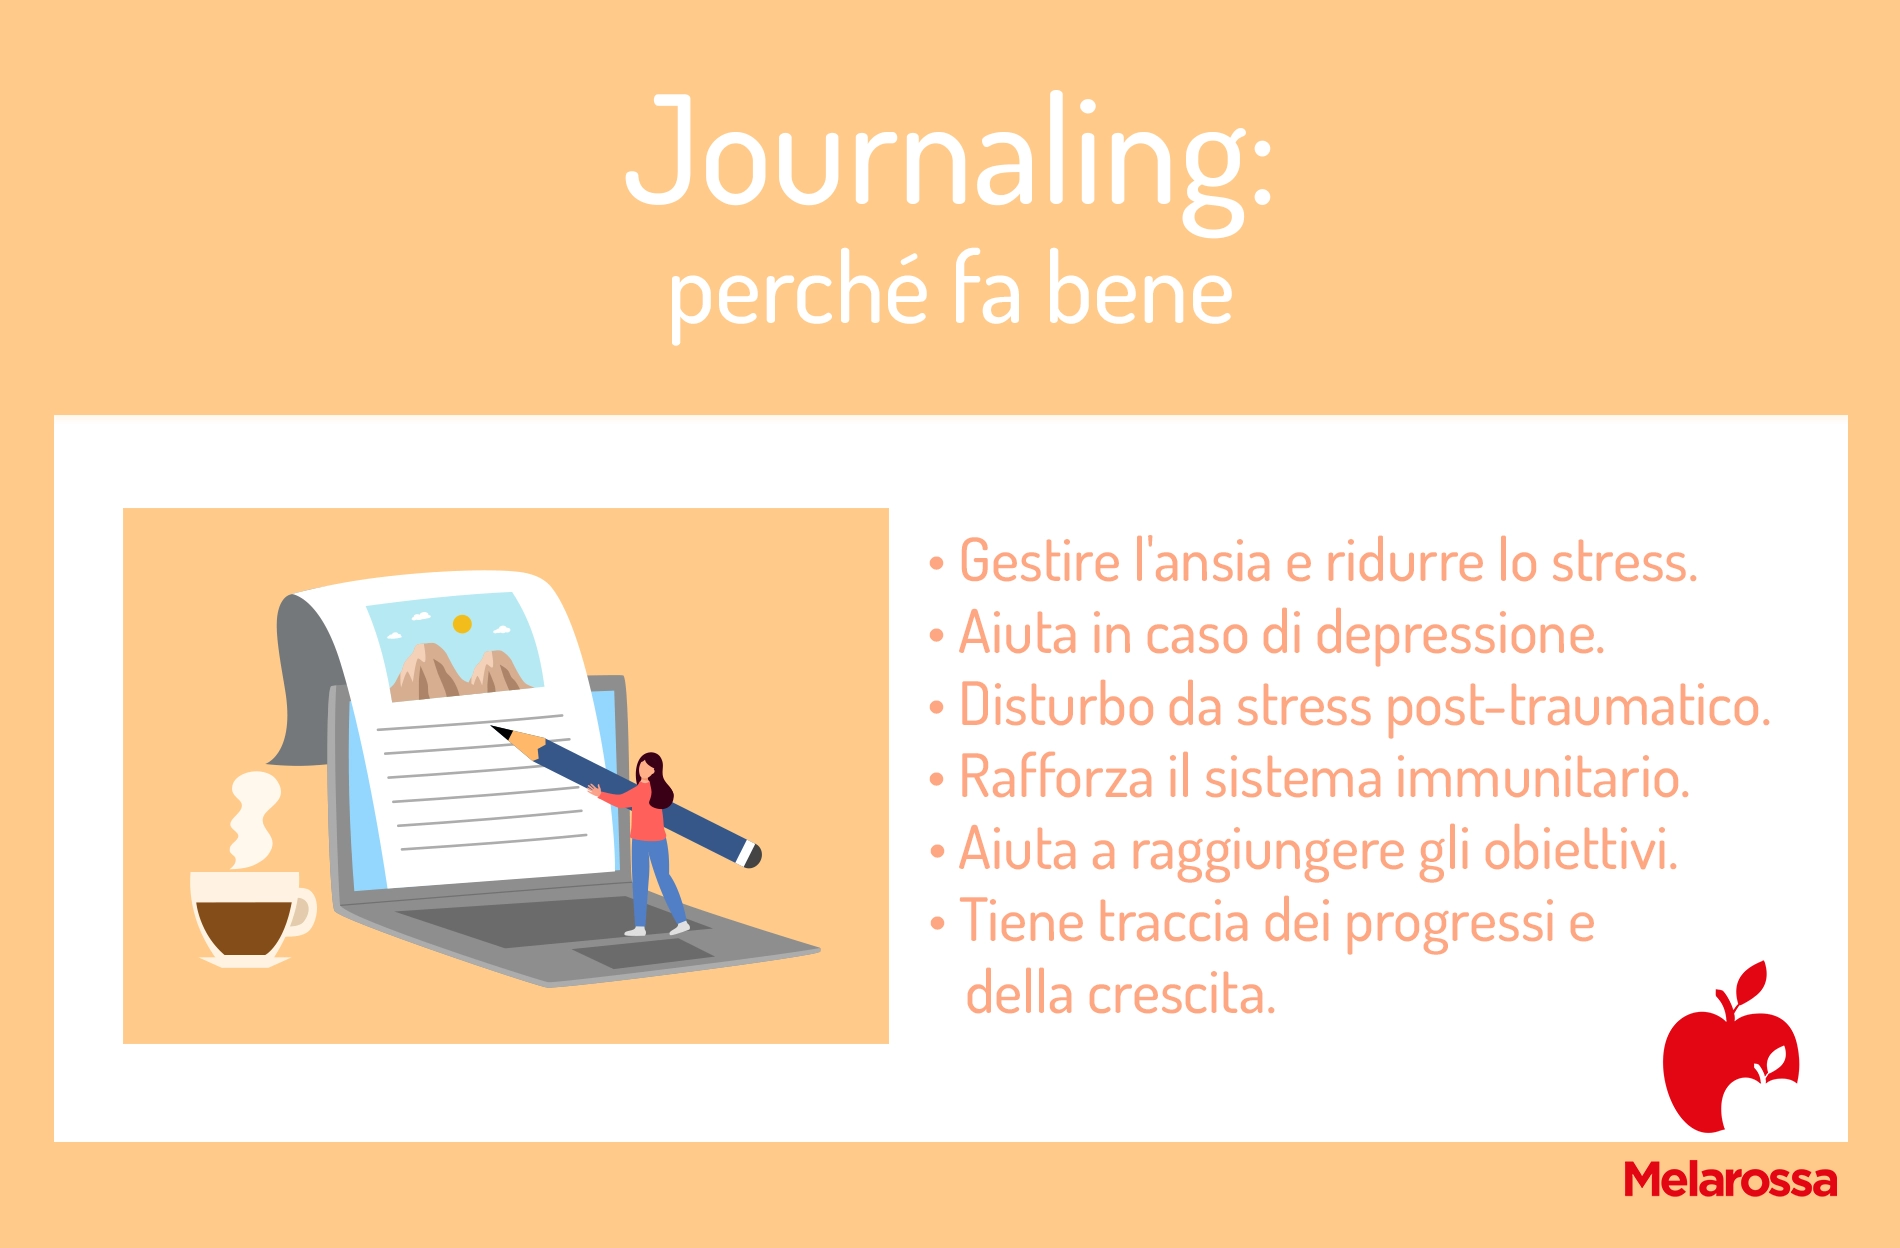 Scrivere un diario per stare meglio: i benefici del journaling